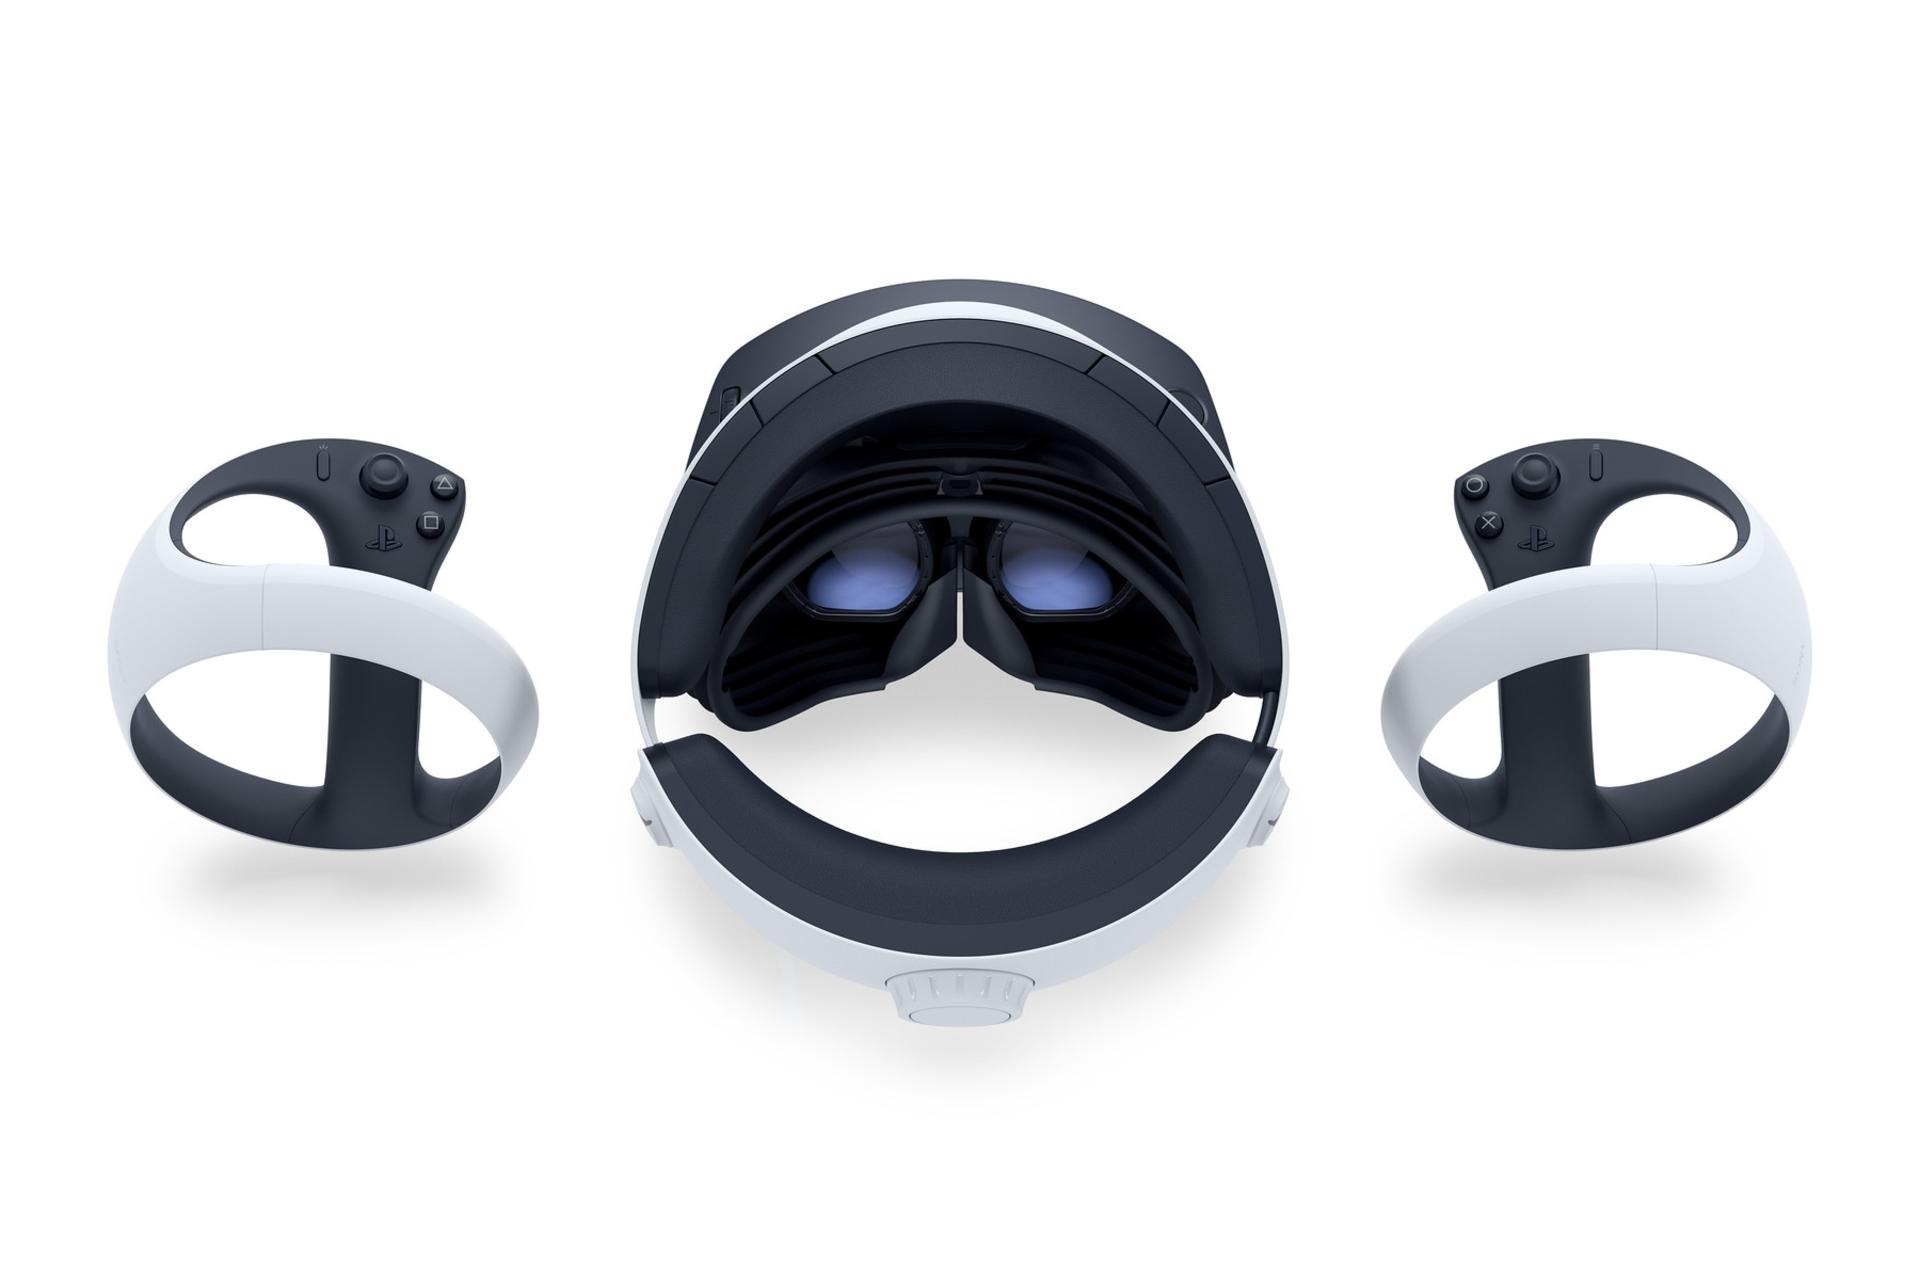 مرجع متخصصين ايران نماي بالا Sony PlayStation VR2 / واقعيت مجازي سوني پلي استيشن VR2